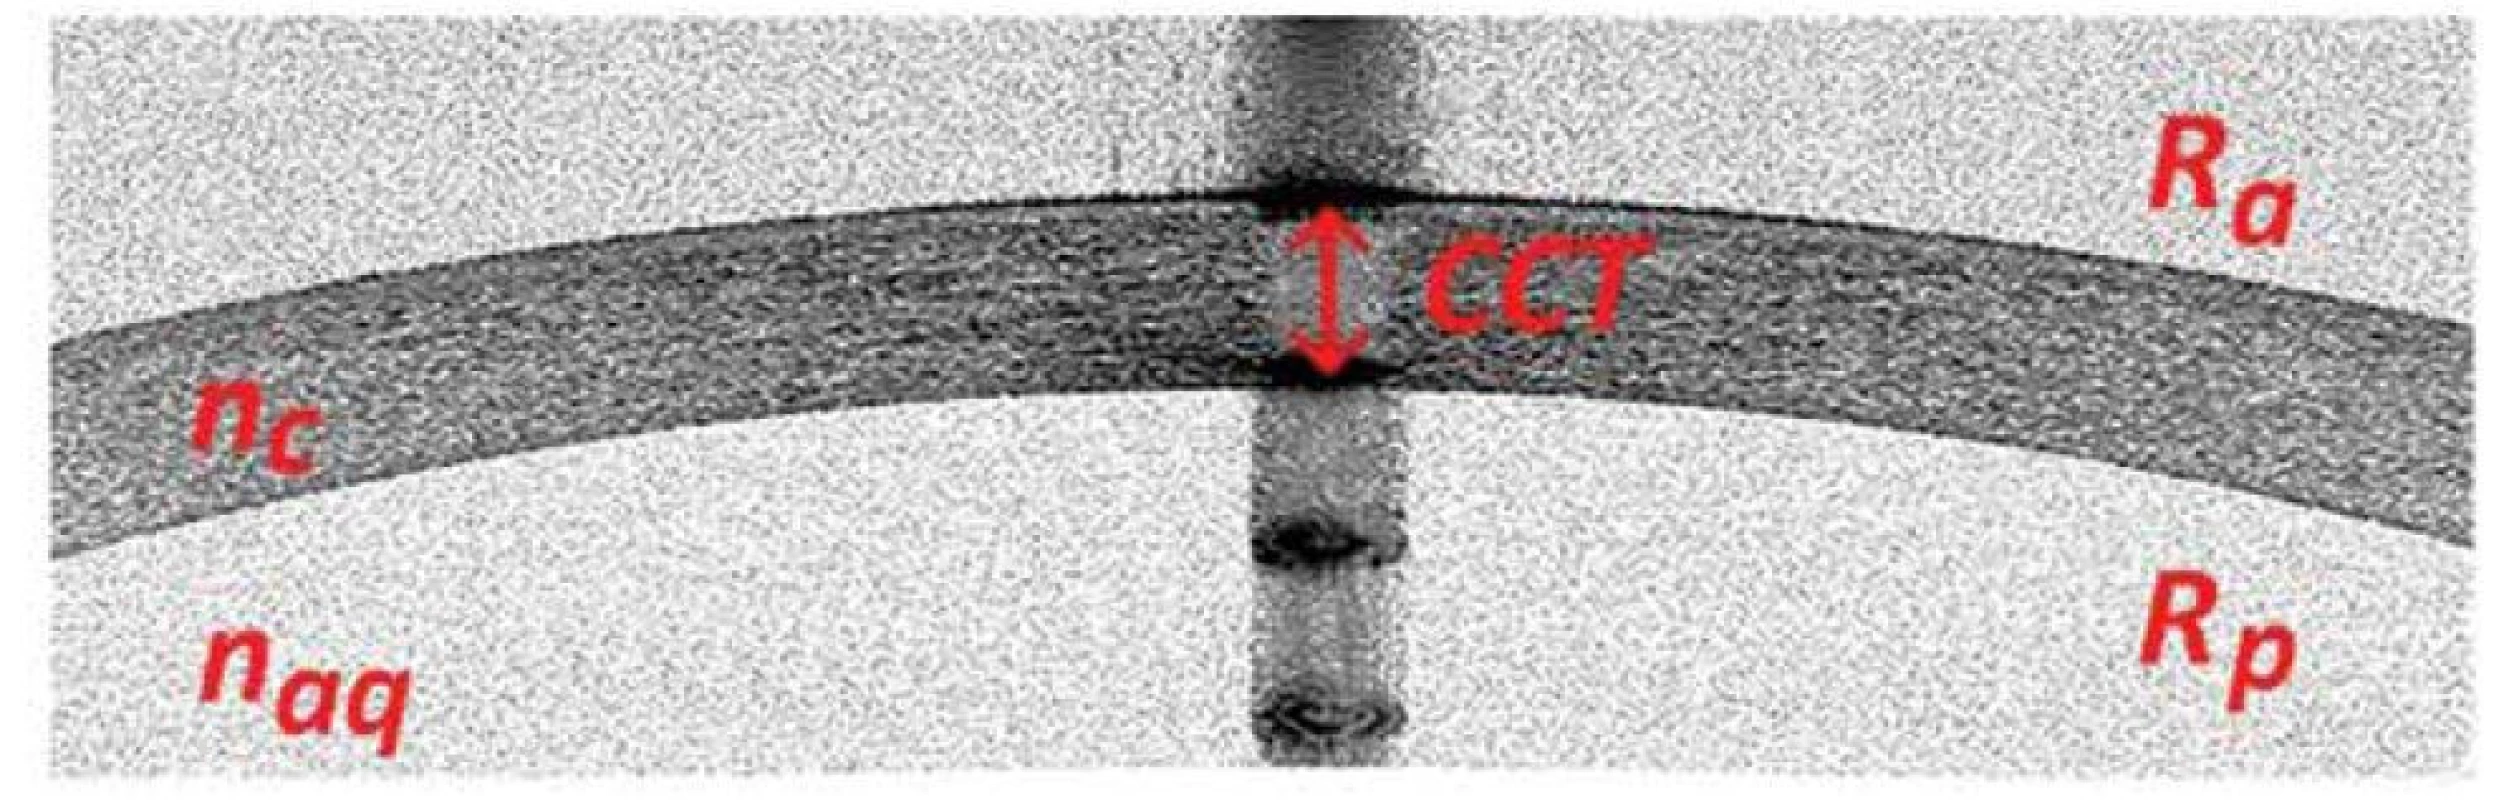 Ukázkový snímek tomografického řezu centrální části rohovky o průměru 3 mm<br>
Ra – radius přední plochy rohovky, Rp – radius zadní plochy rohovky, nc – index lomu rohovky, naq – index
lomu komorové tekutiny, CCT – centrální pachymetrie